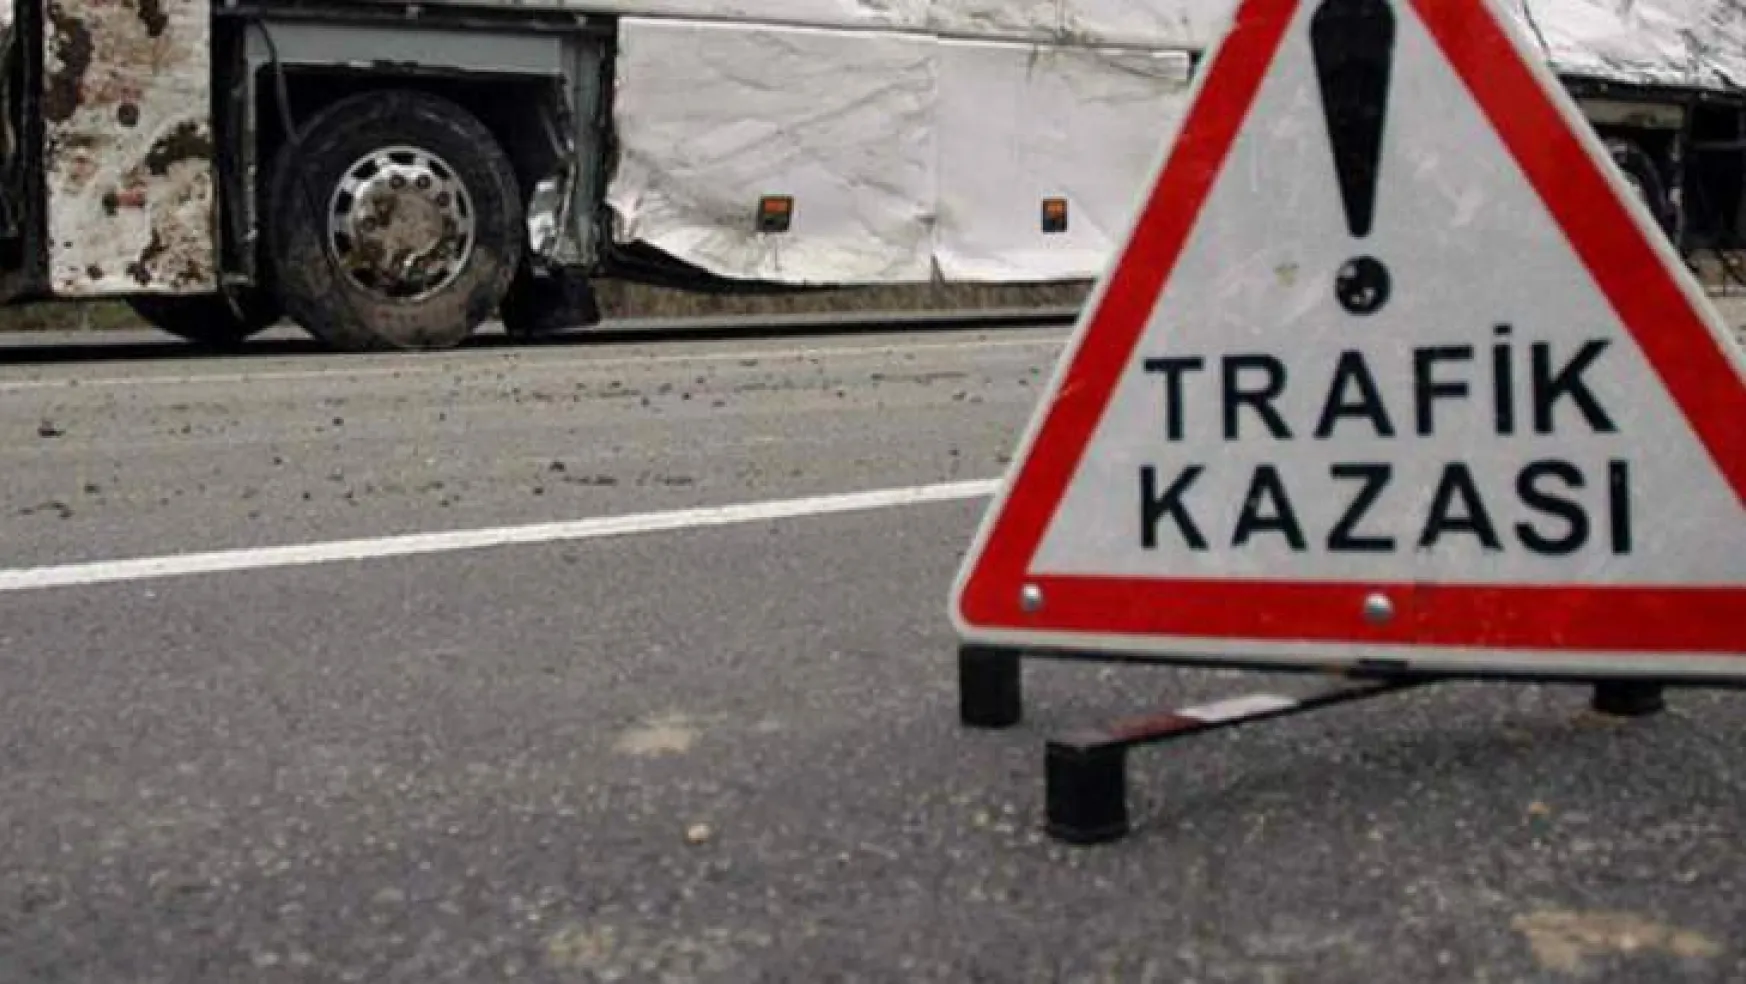 Malatya ilinde, 1 792 adet ölümlü yaralanmalı trafik kazası meydana geldi.